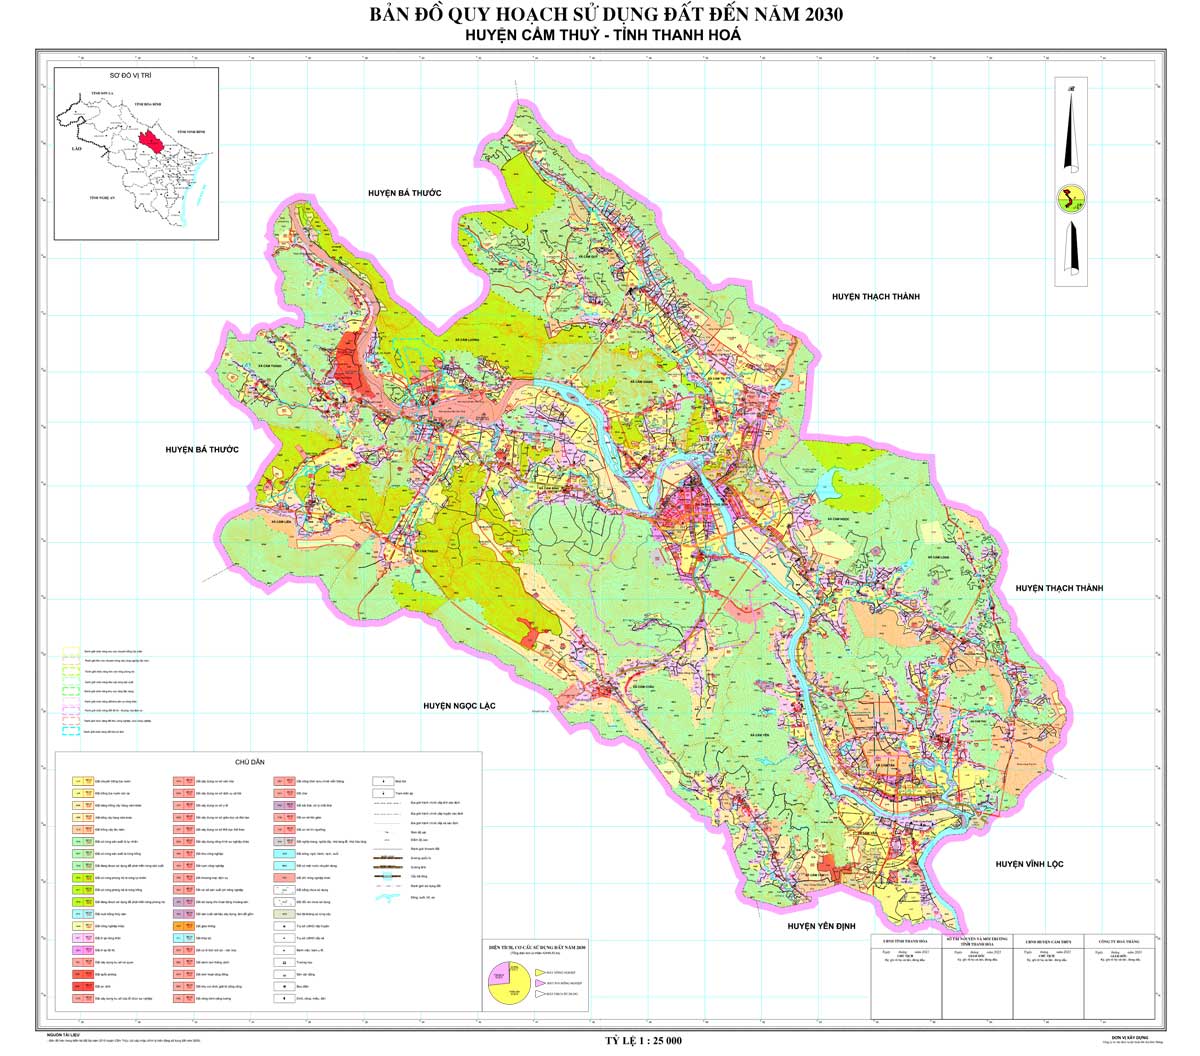 Bản đồ QHSDĐ huyện Cẩm Thủy đến năm 2030